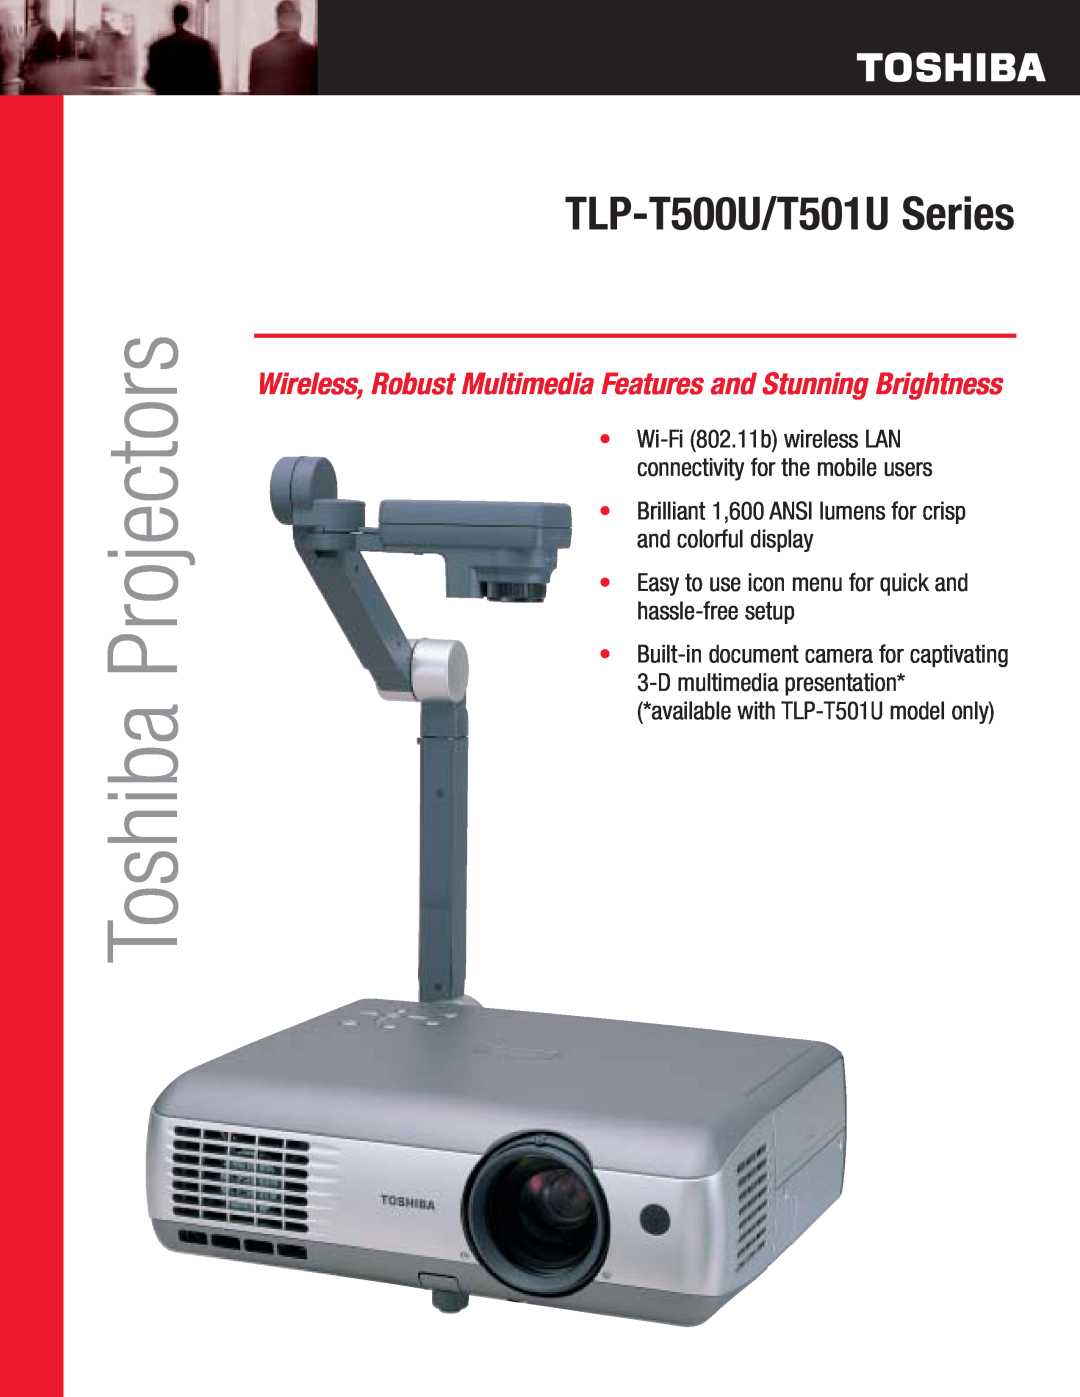 Toshiba TLP-T500USeries manual Toshiba Projectors, TLP-T500U/T501U Series 